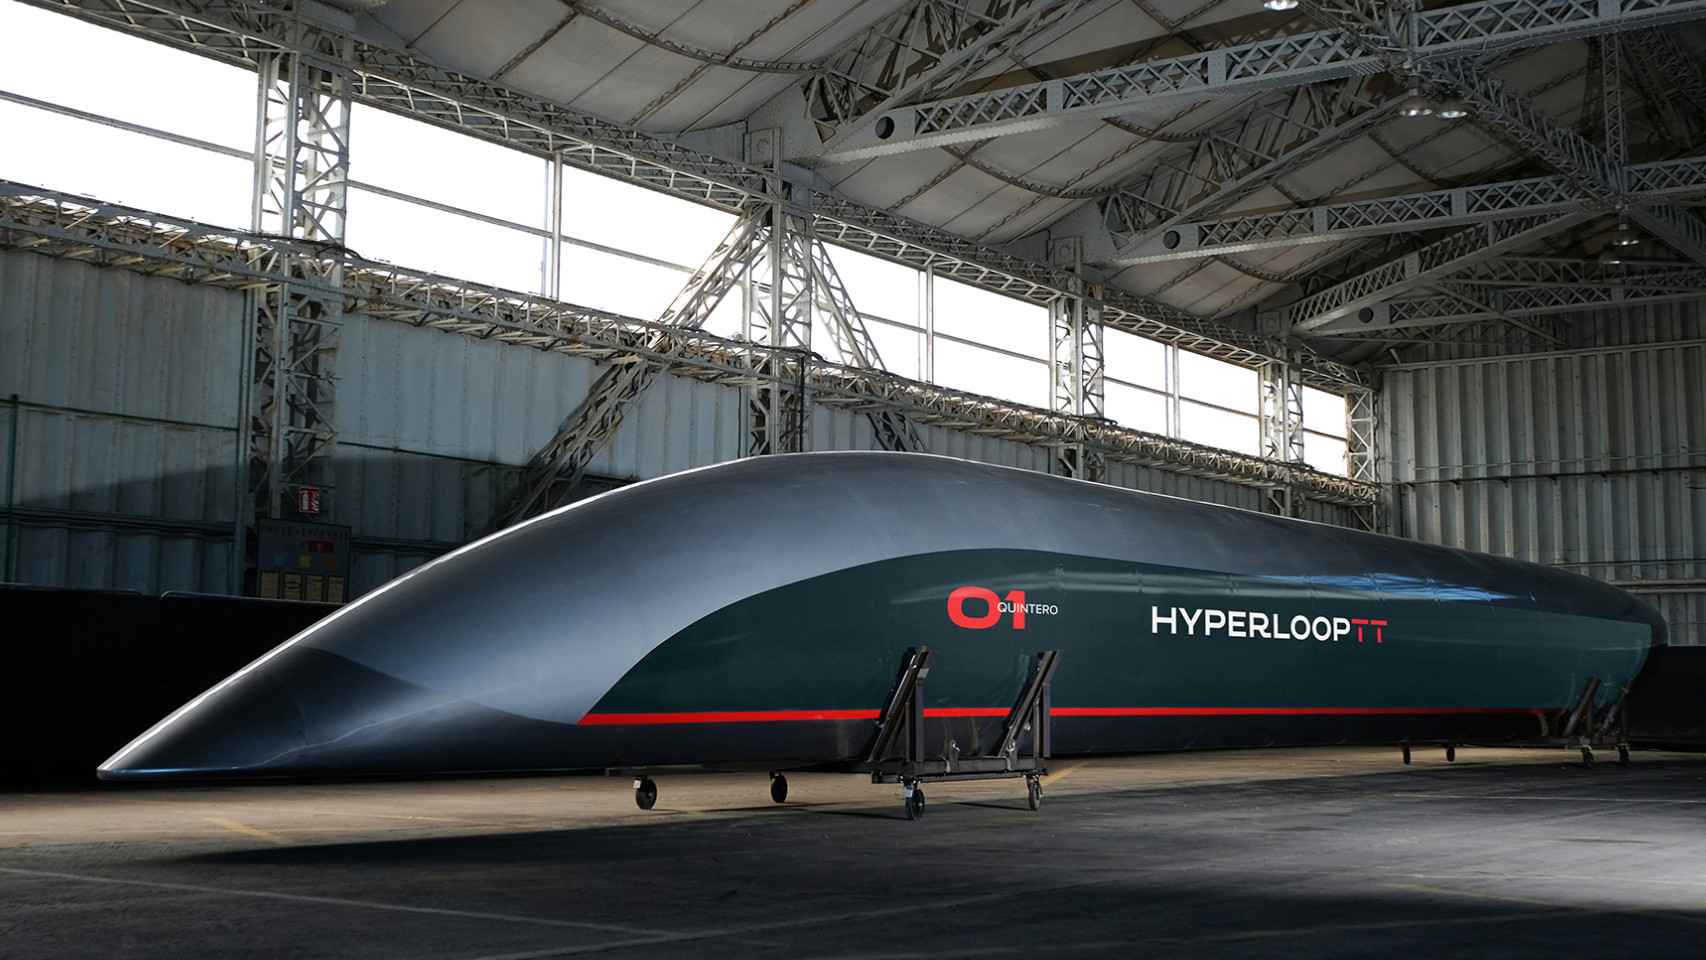 El HyperloopTT Express Freight.